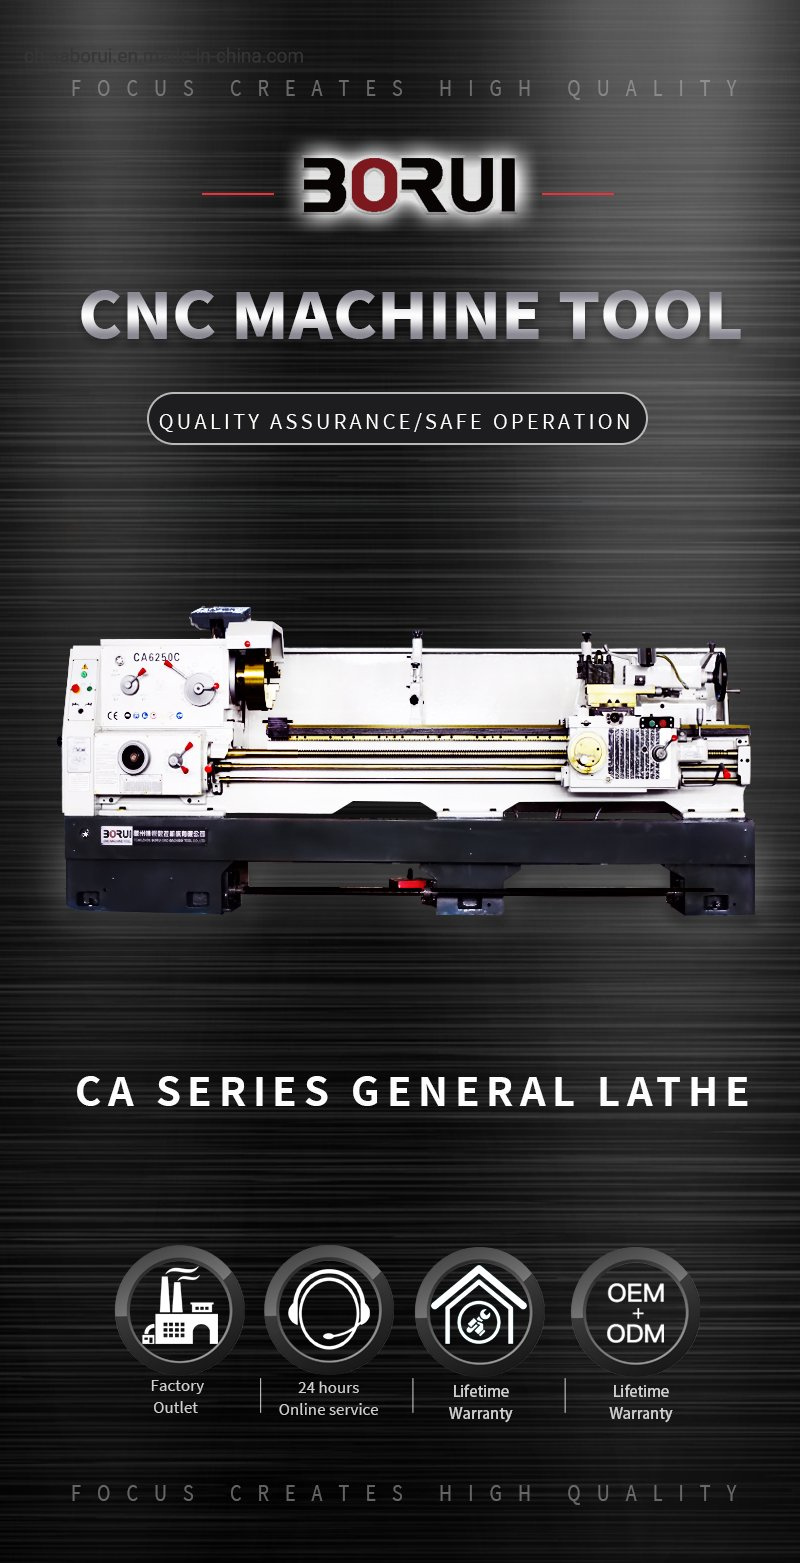 Ca6150 Universal Gap Bed Manual Turning Horizontal Metal Lathe Machine